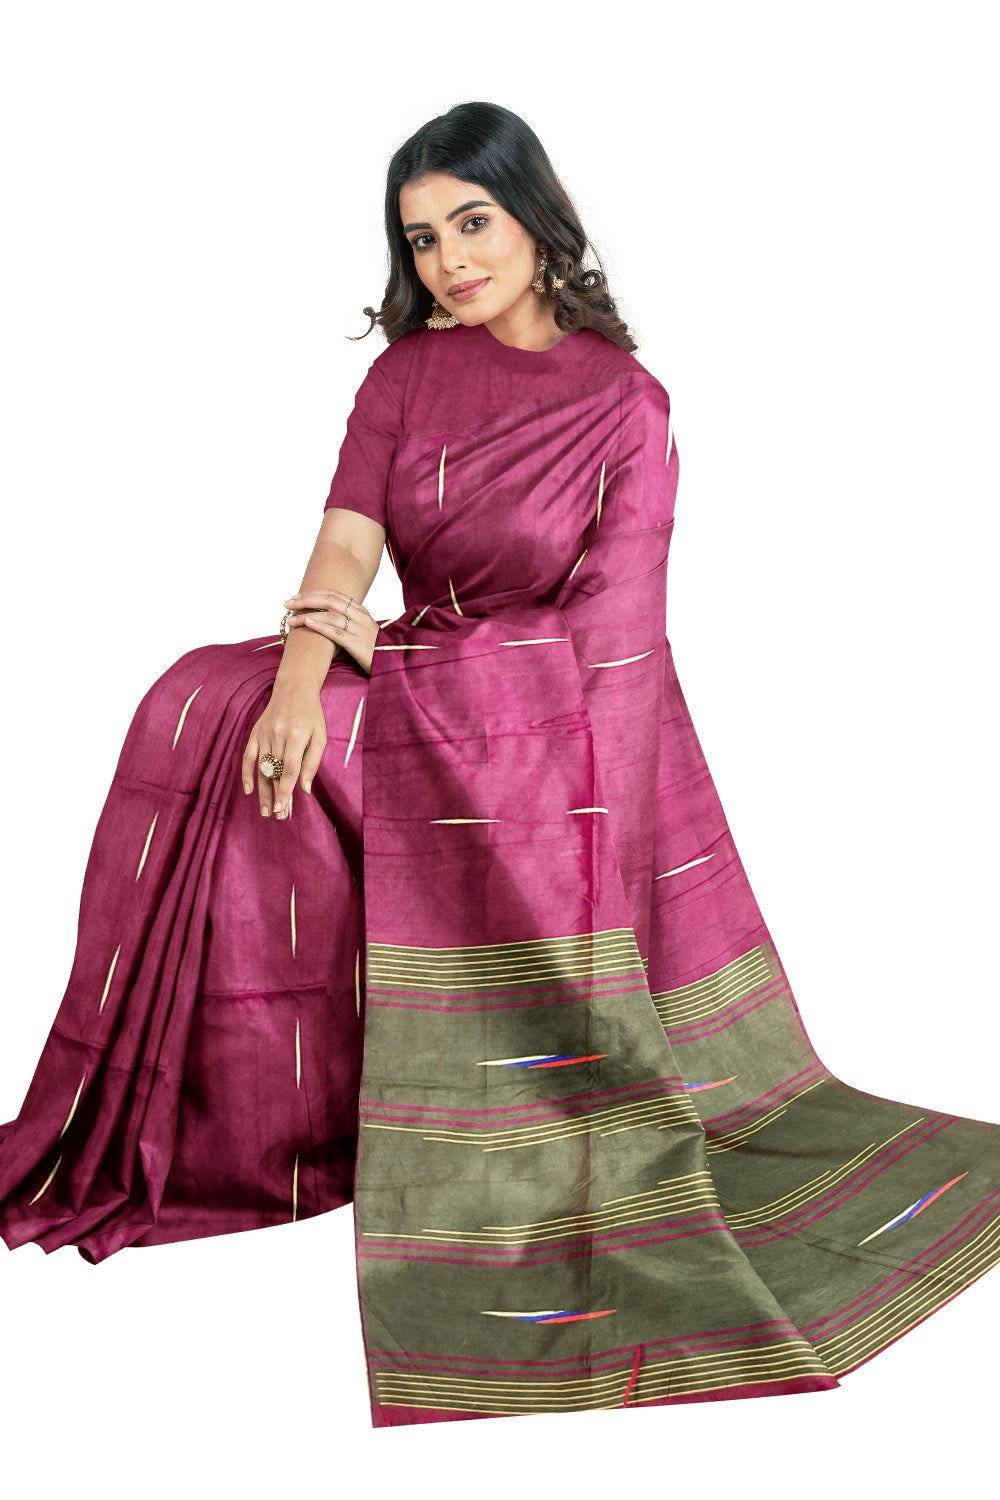 Southloom Tussar Thread Work Magenta Designer Saree with Dark Green Pallu